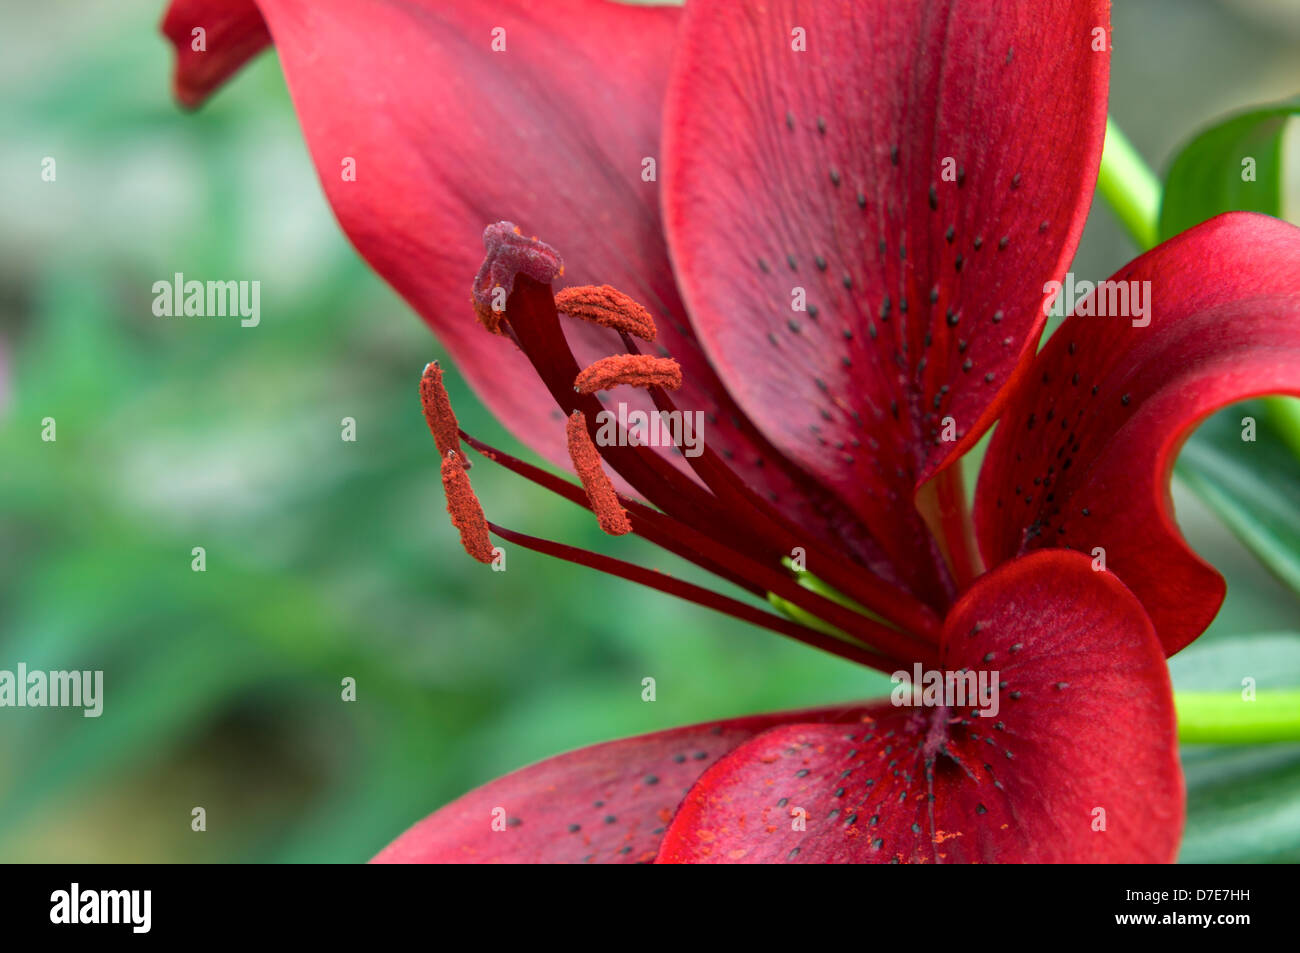 Lily asiatiques rouge libre de pétales et les étamines de style en pleine floraison Banque D'Images